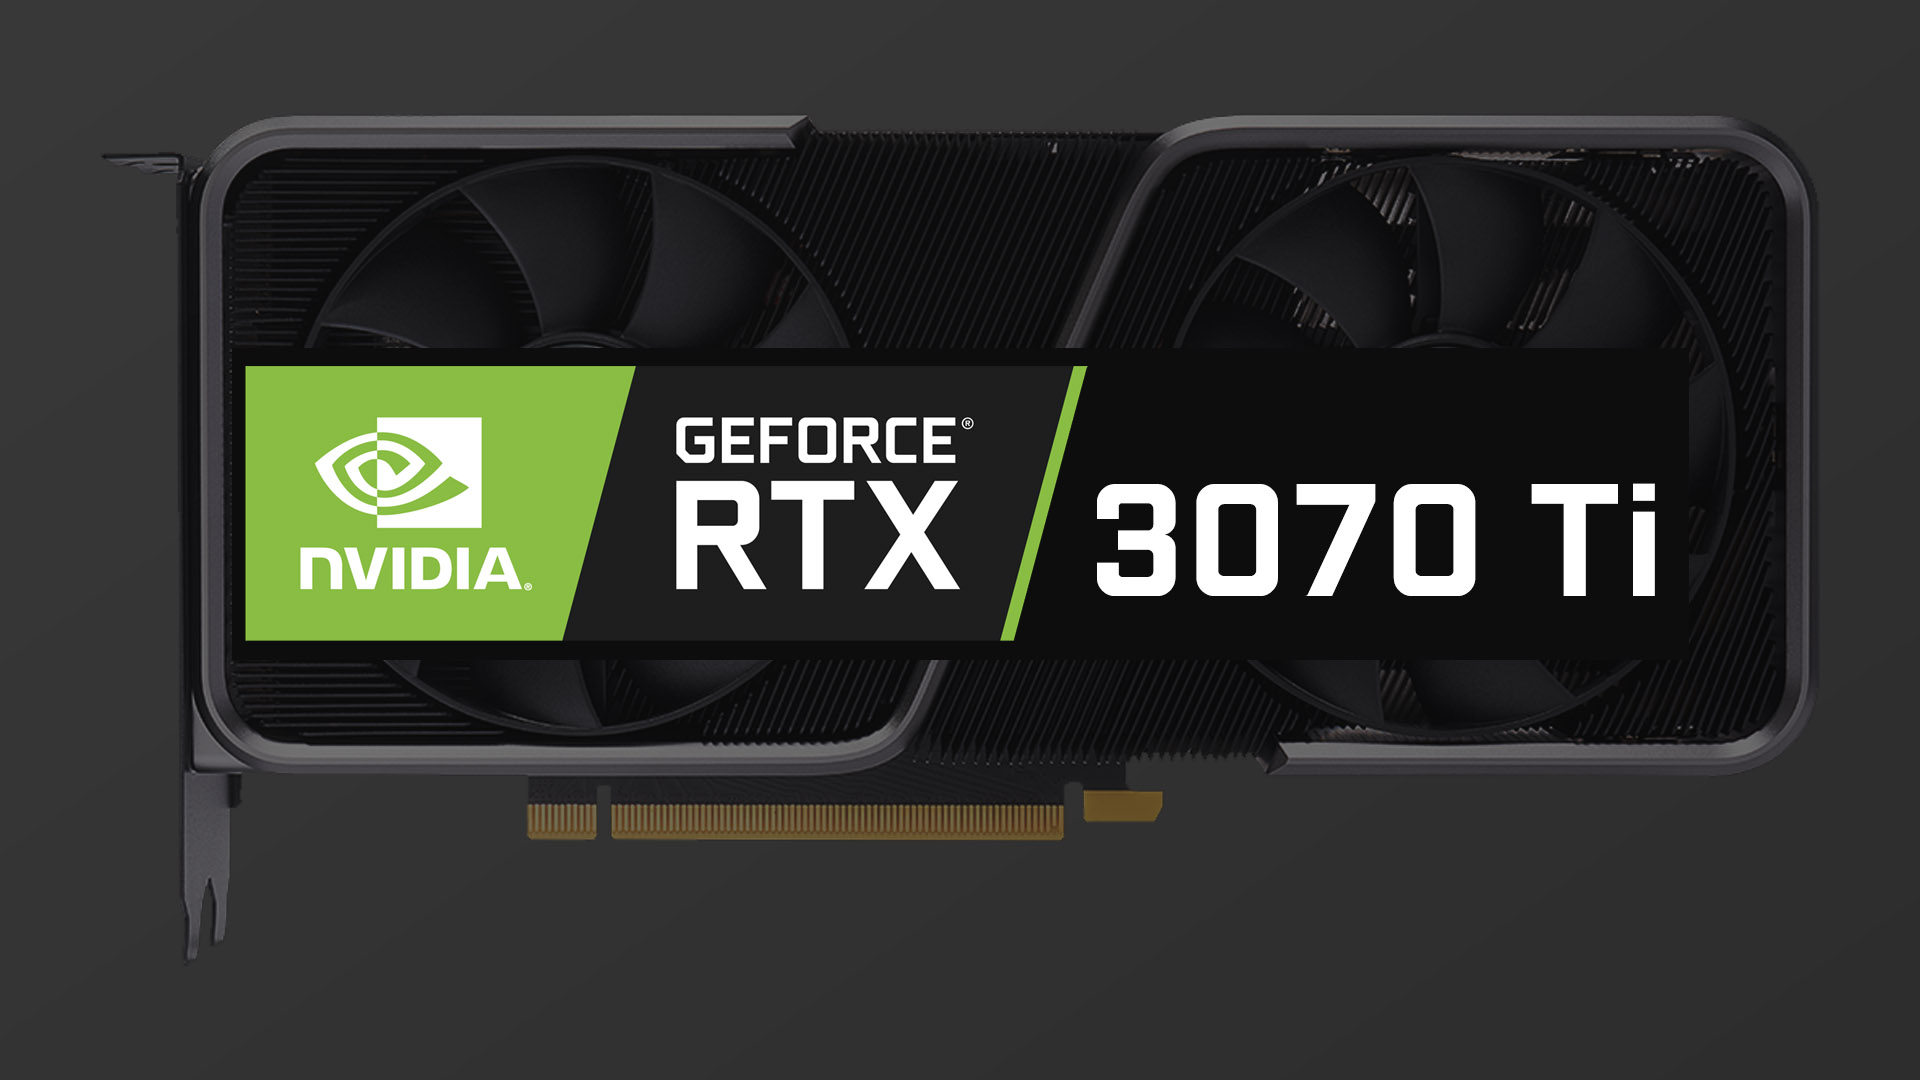 6月10日 22:00発売、GeForce RTX 3070 Tiの仕様と予約在庫情報